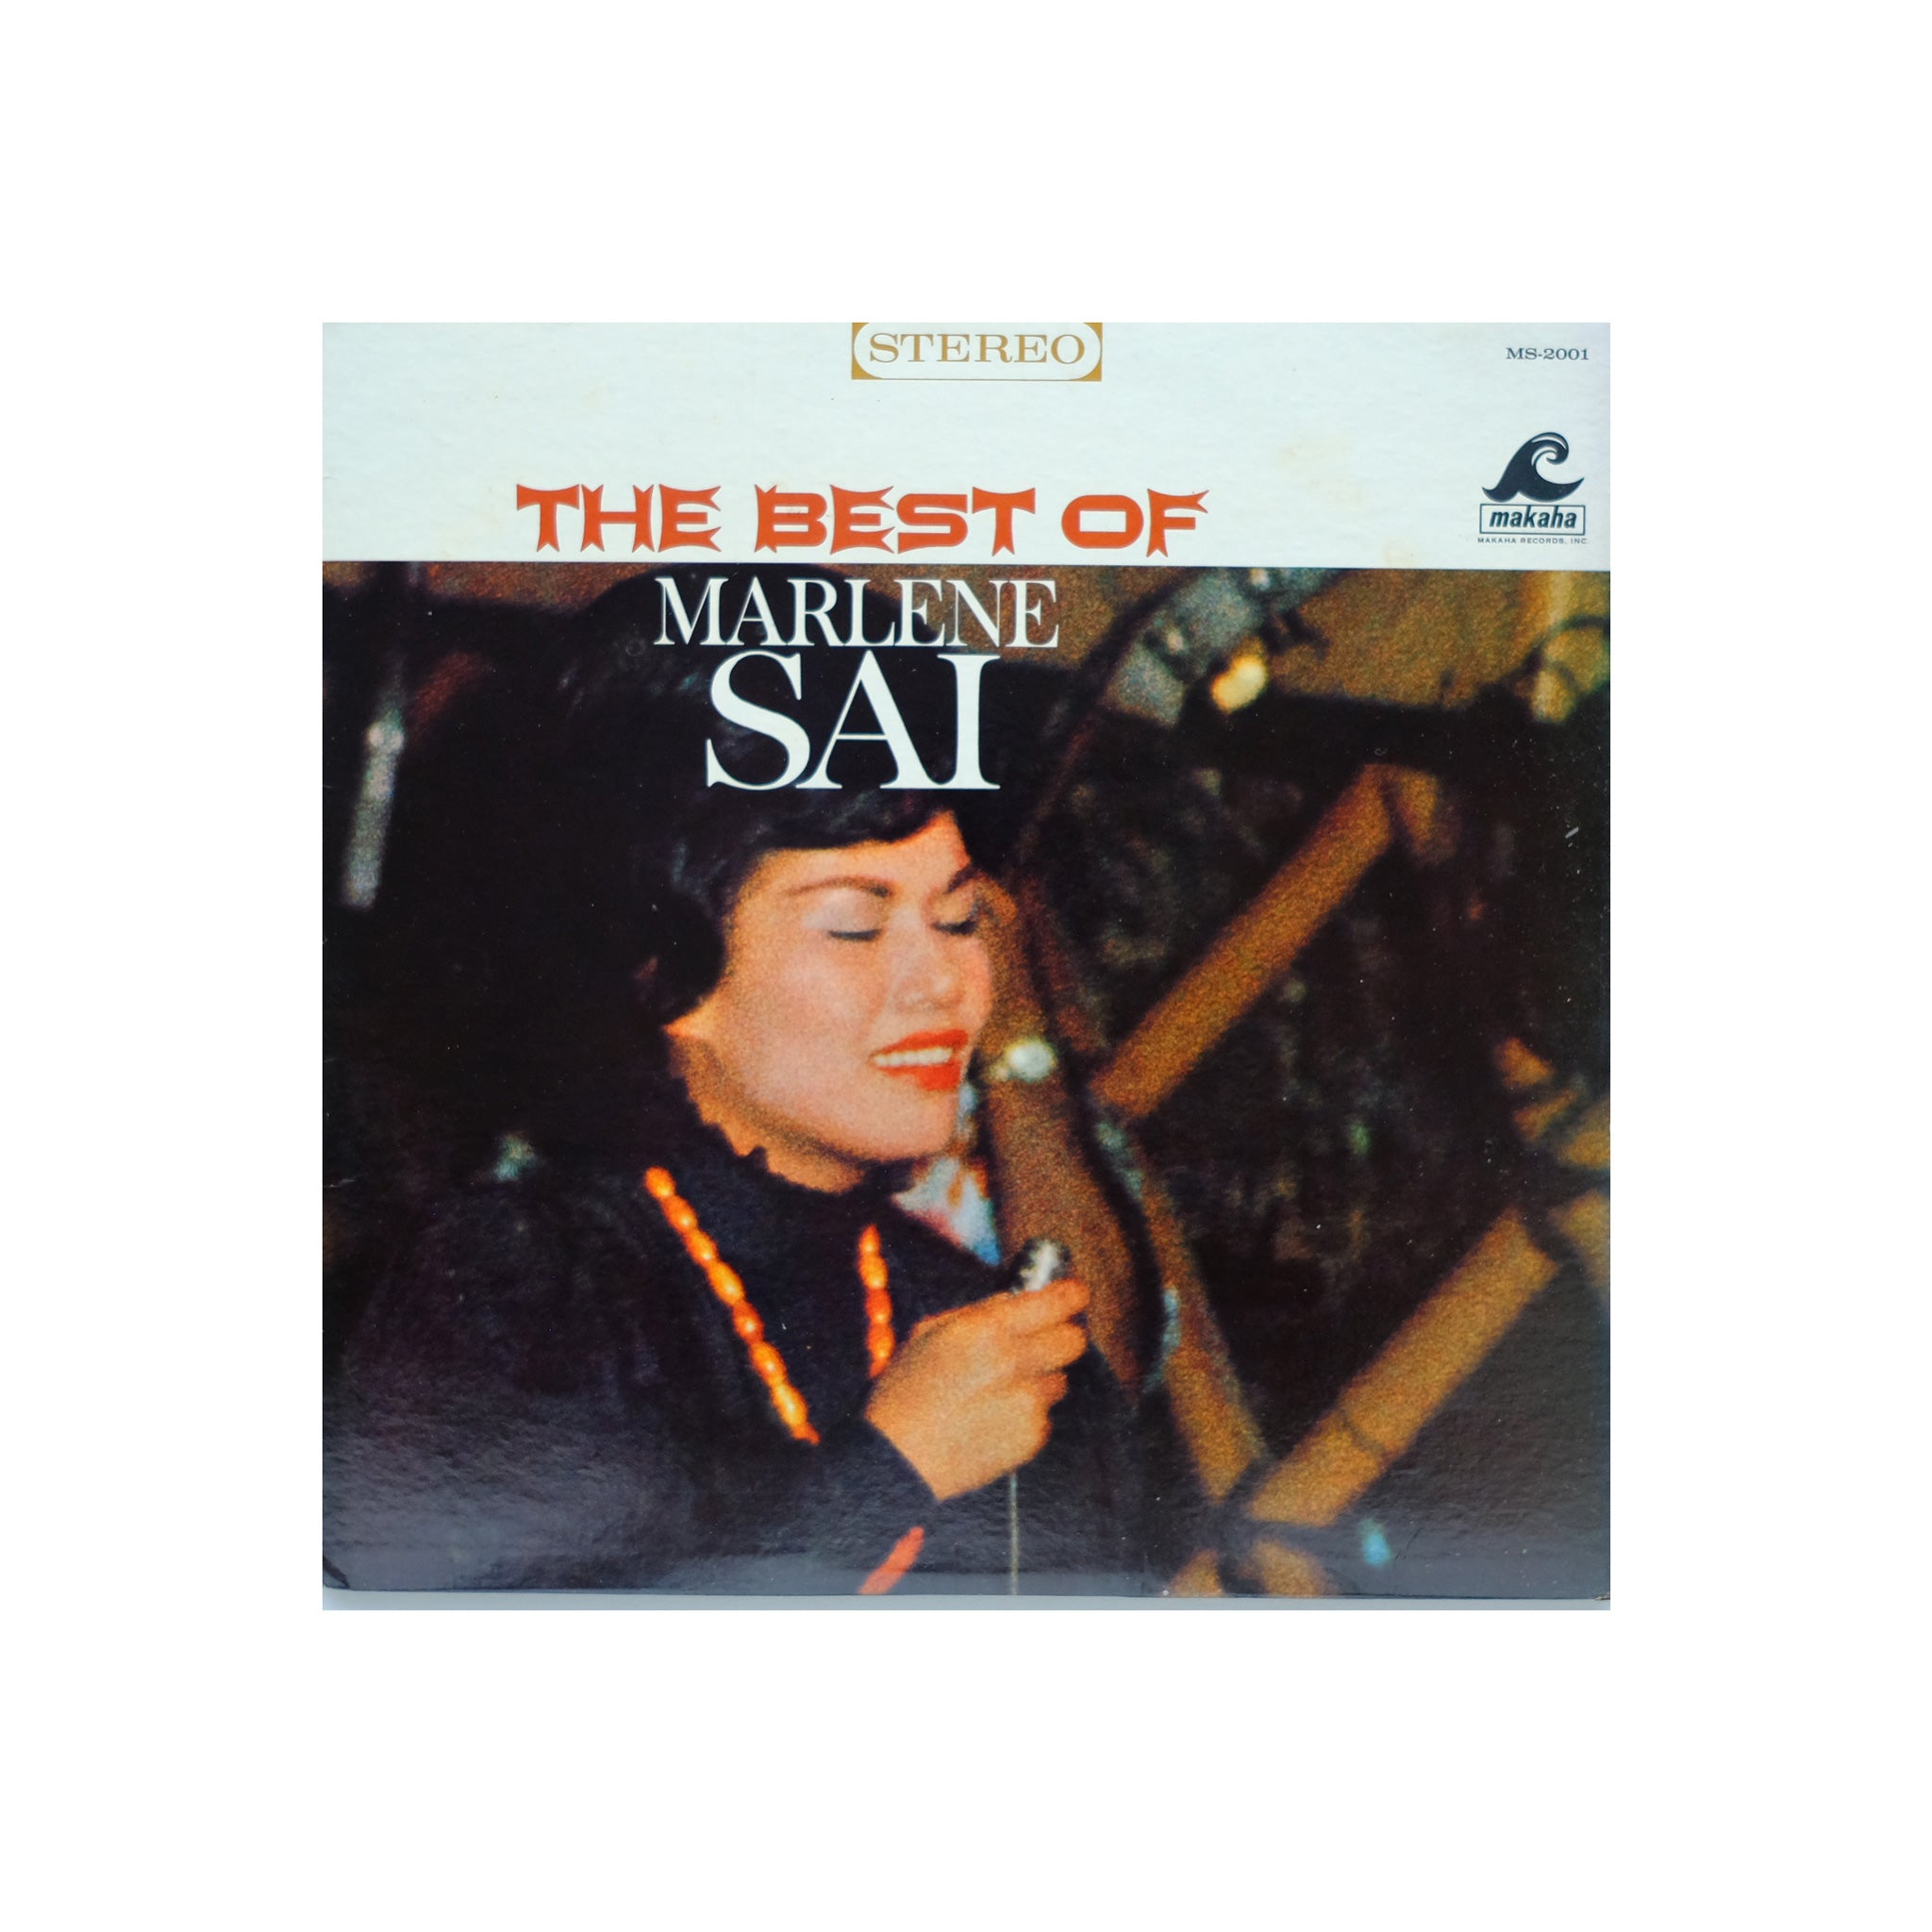 Marlene Sai - The Best of Marlene Sai